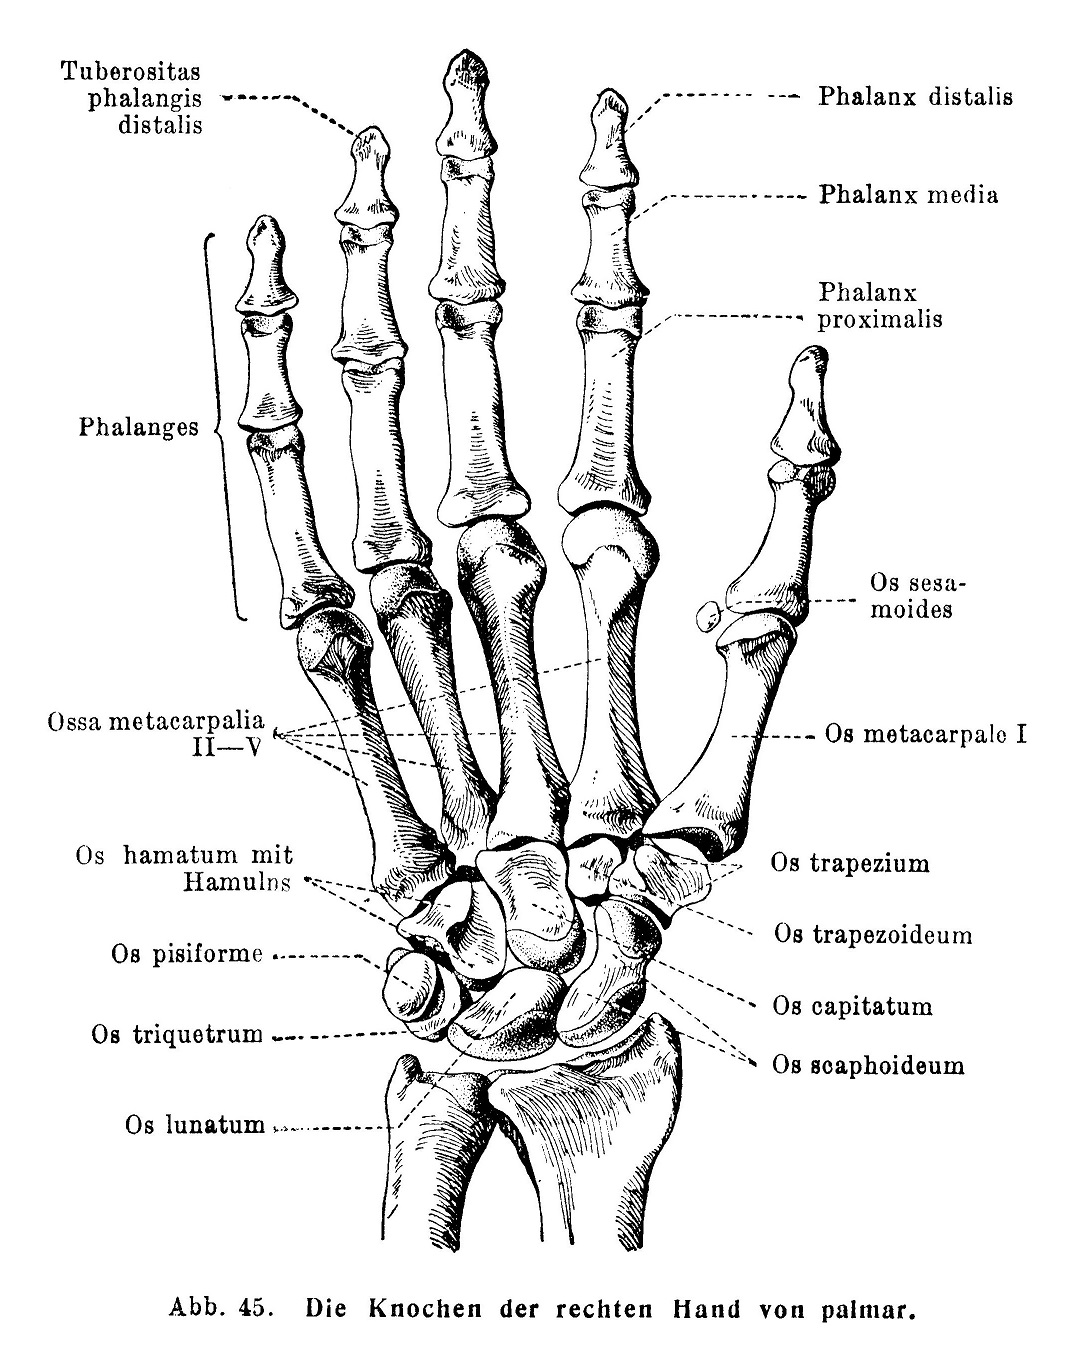 Die Knochen der rechten Hand von pulmar